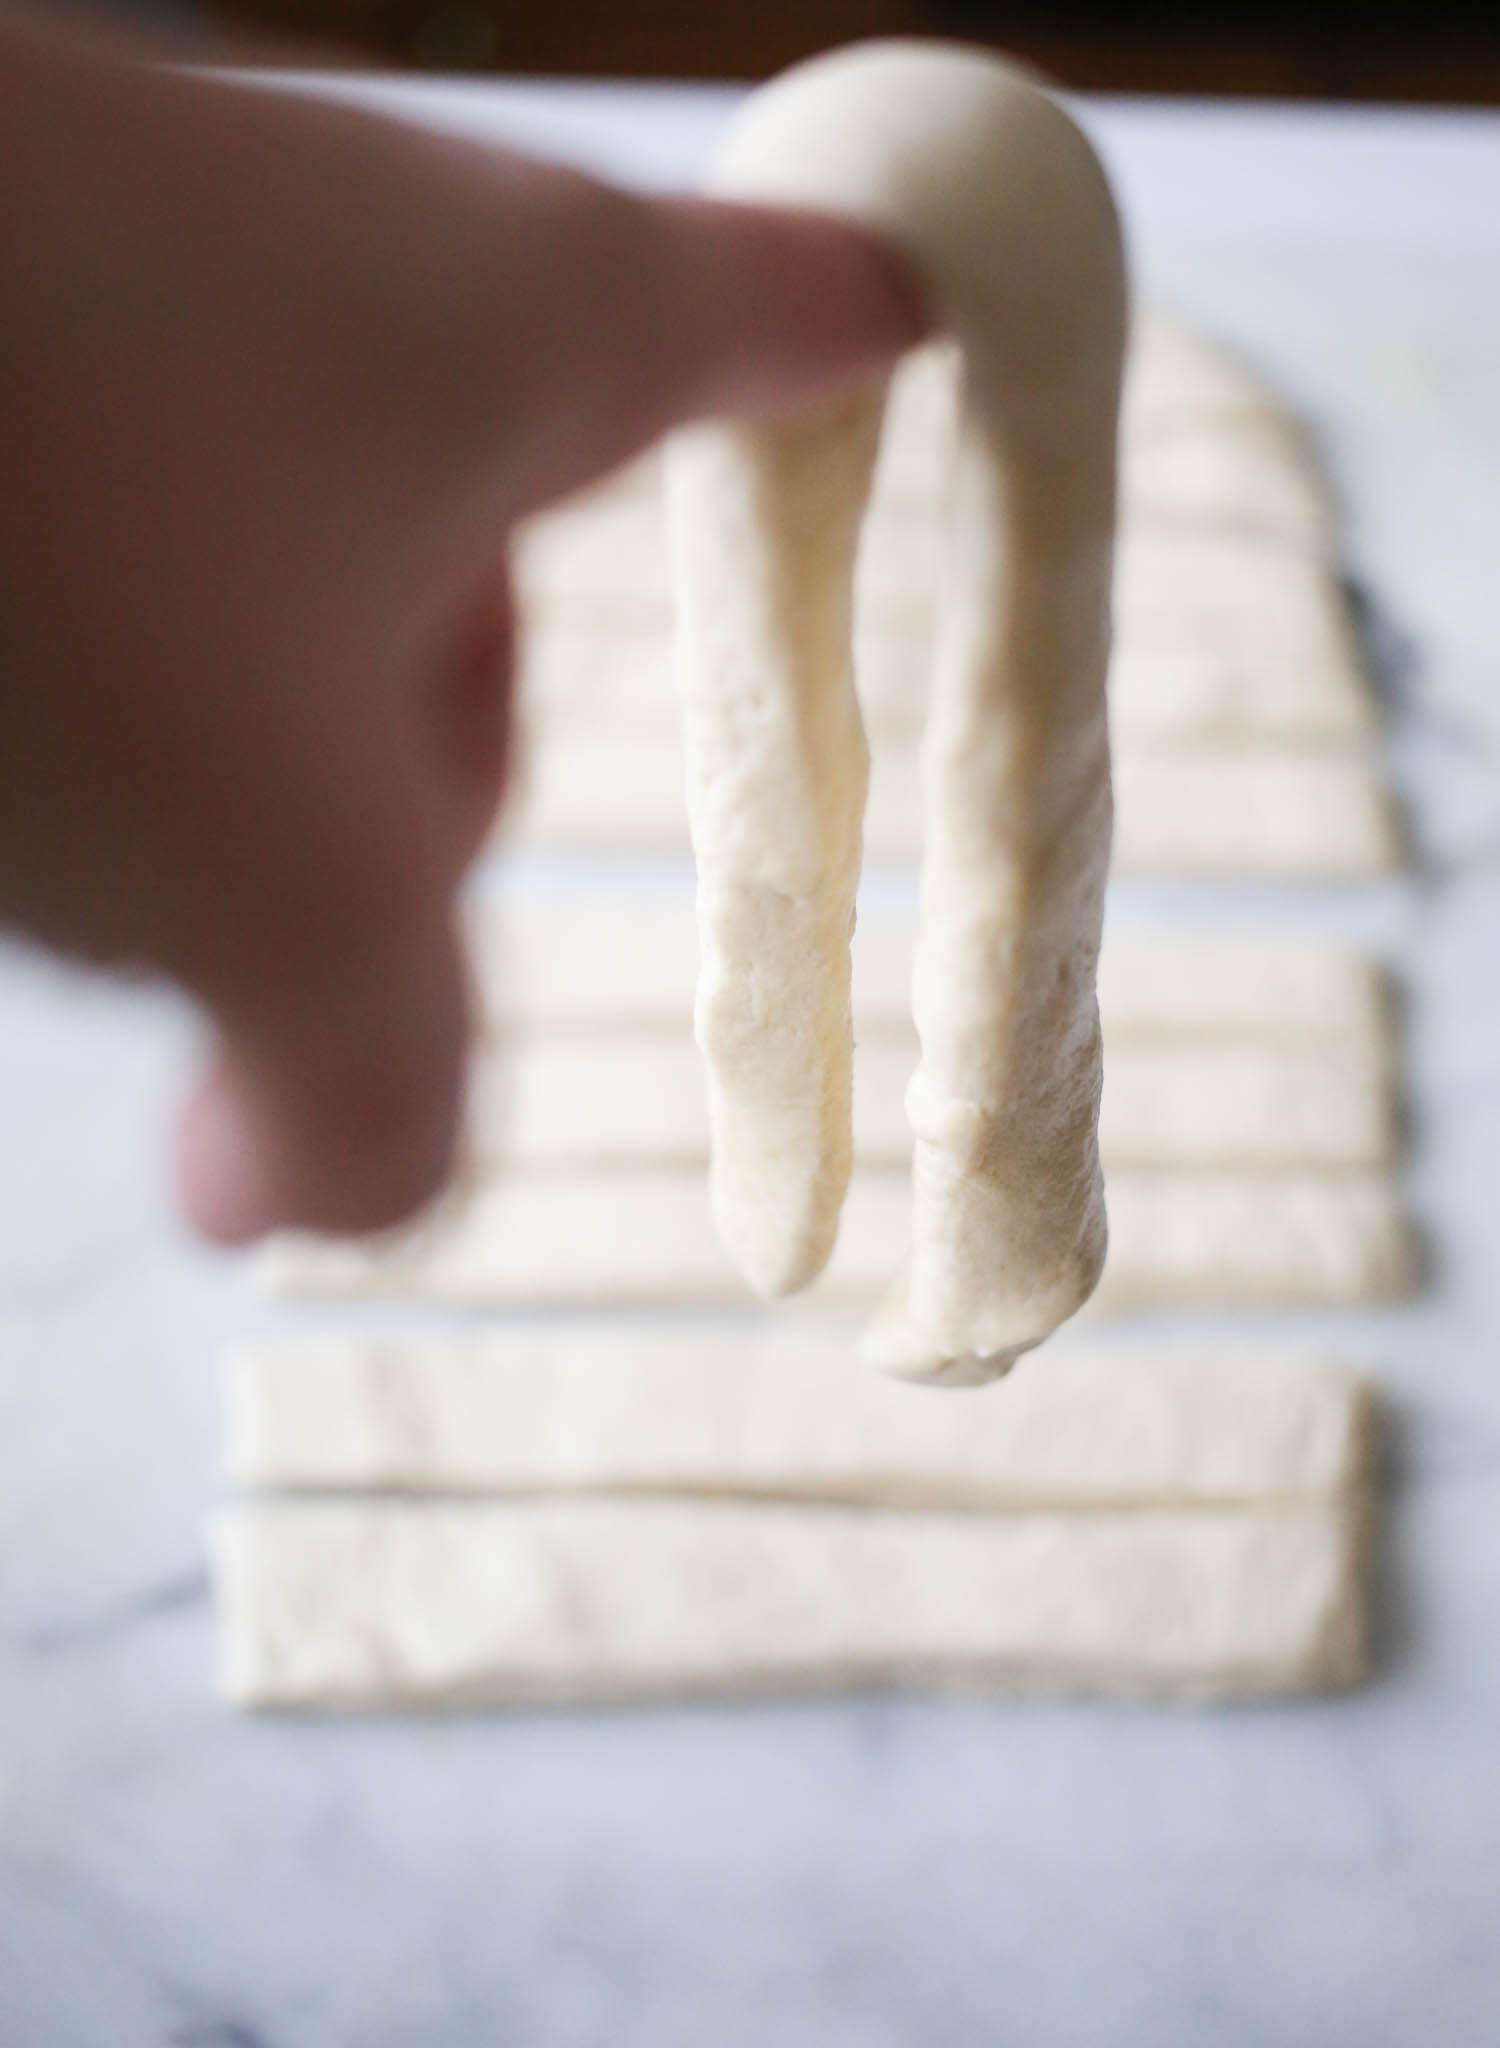 draping dough over finger for breadsticks from our best bites